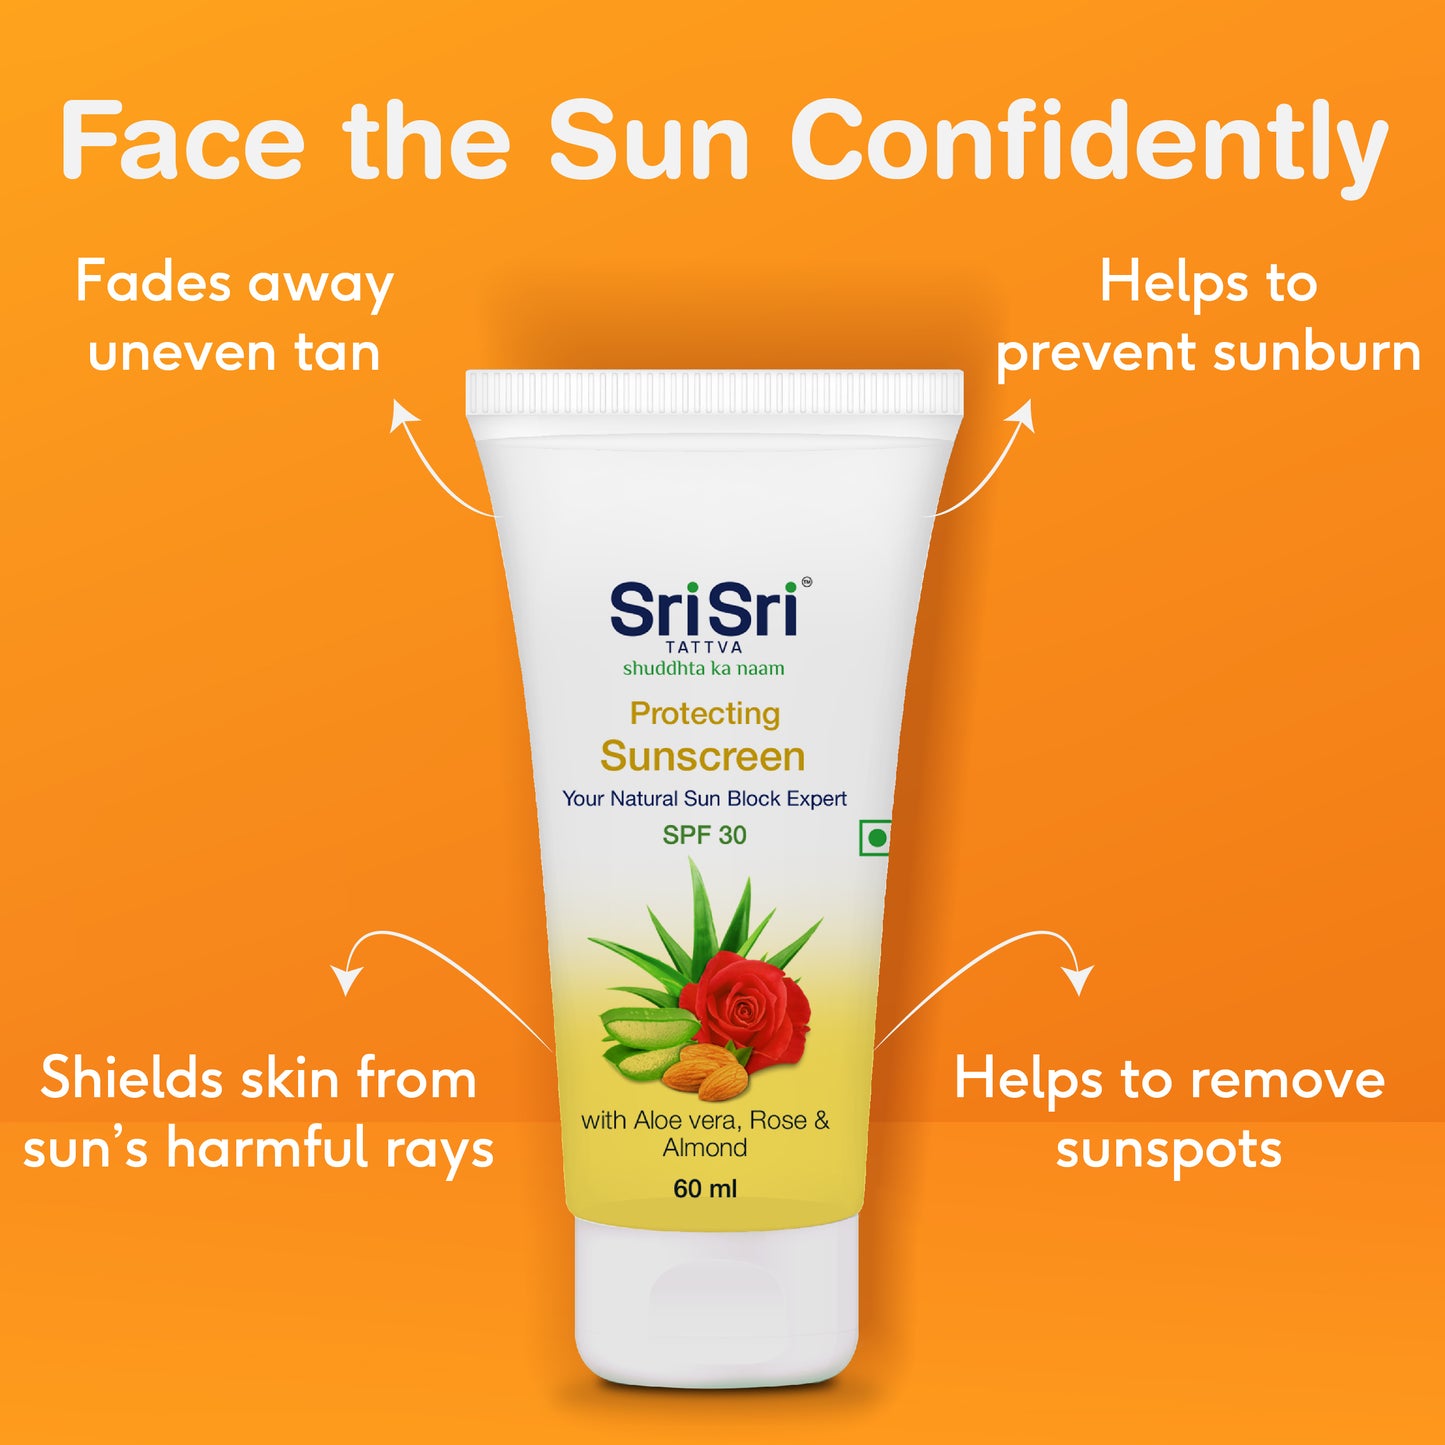 Protecting Sunscreen Cream - Natural Sun Block Expert, 60 ml